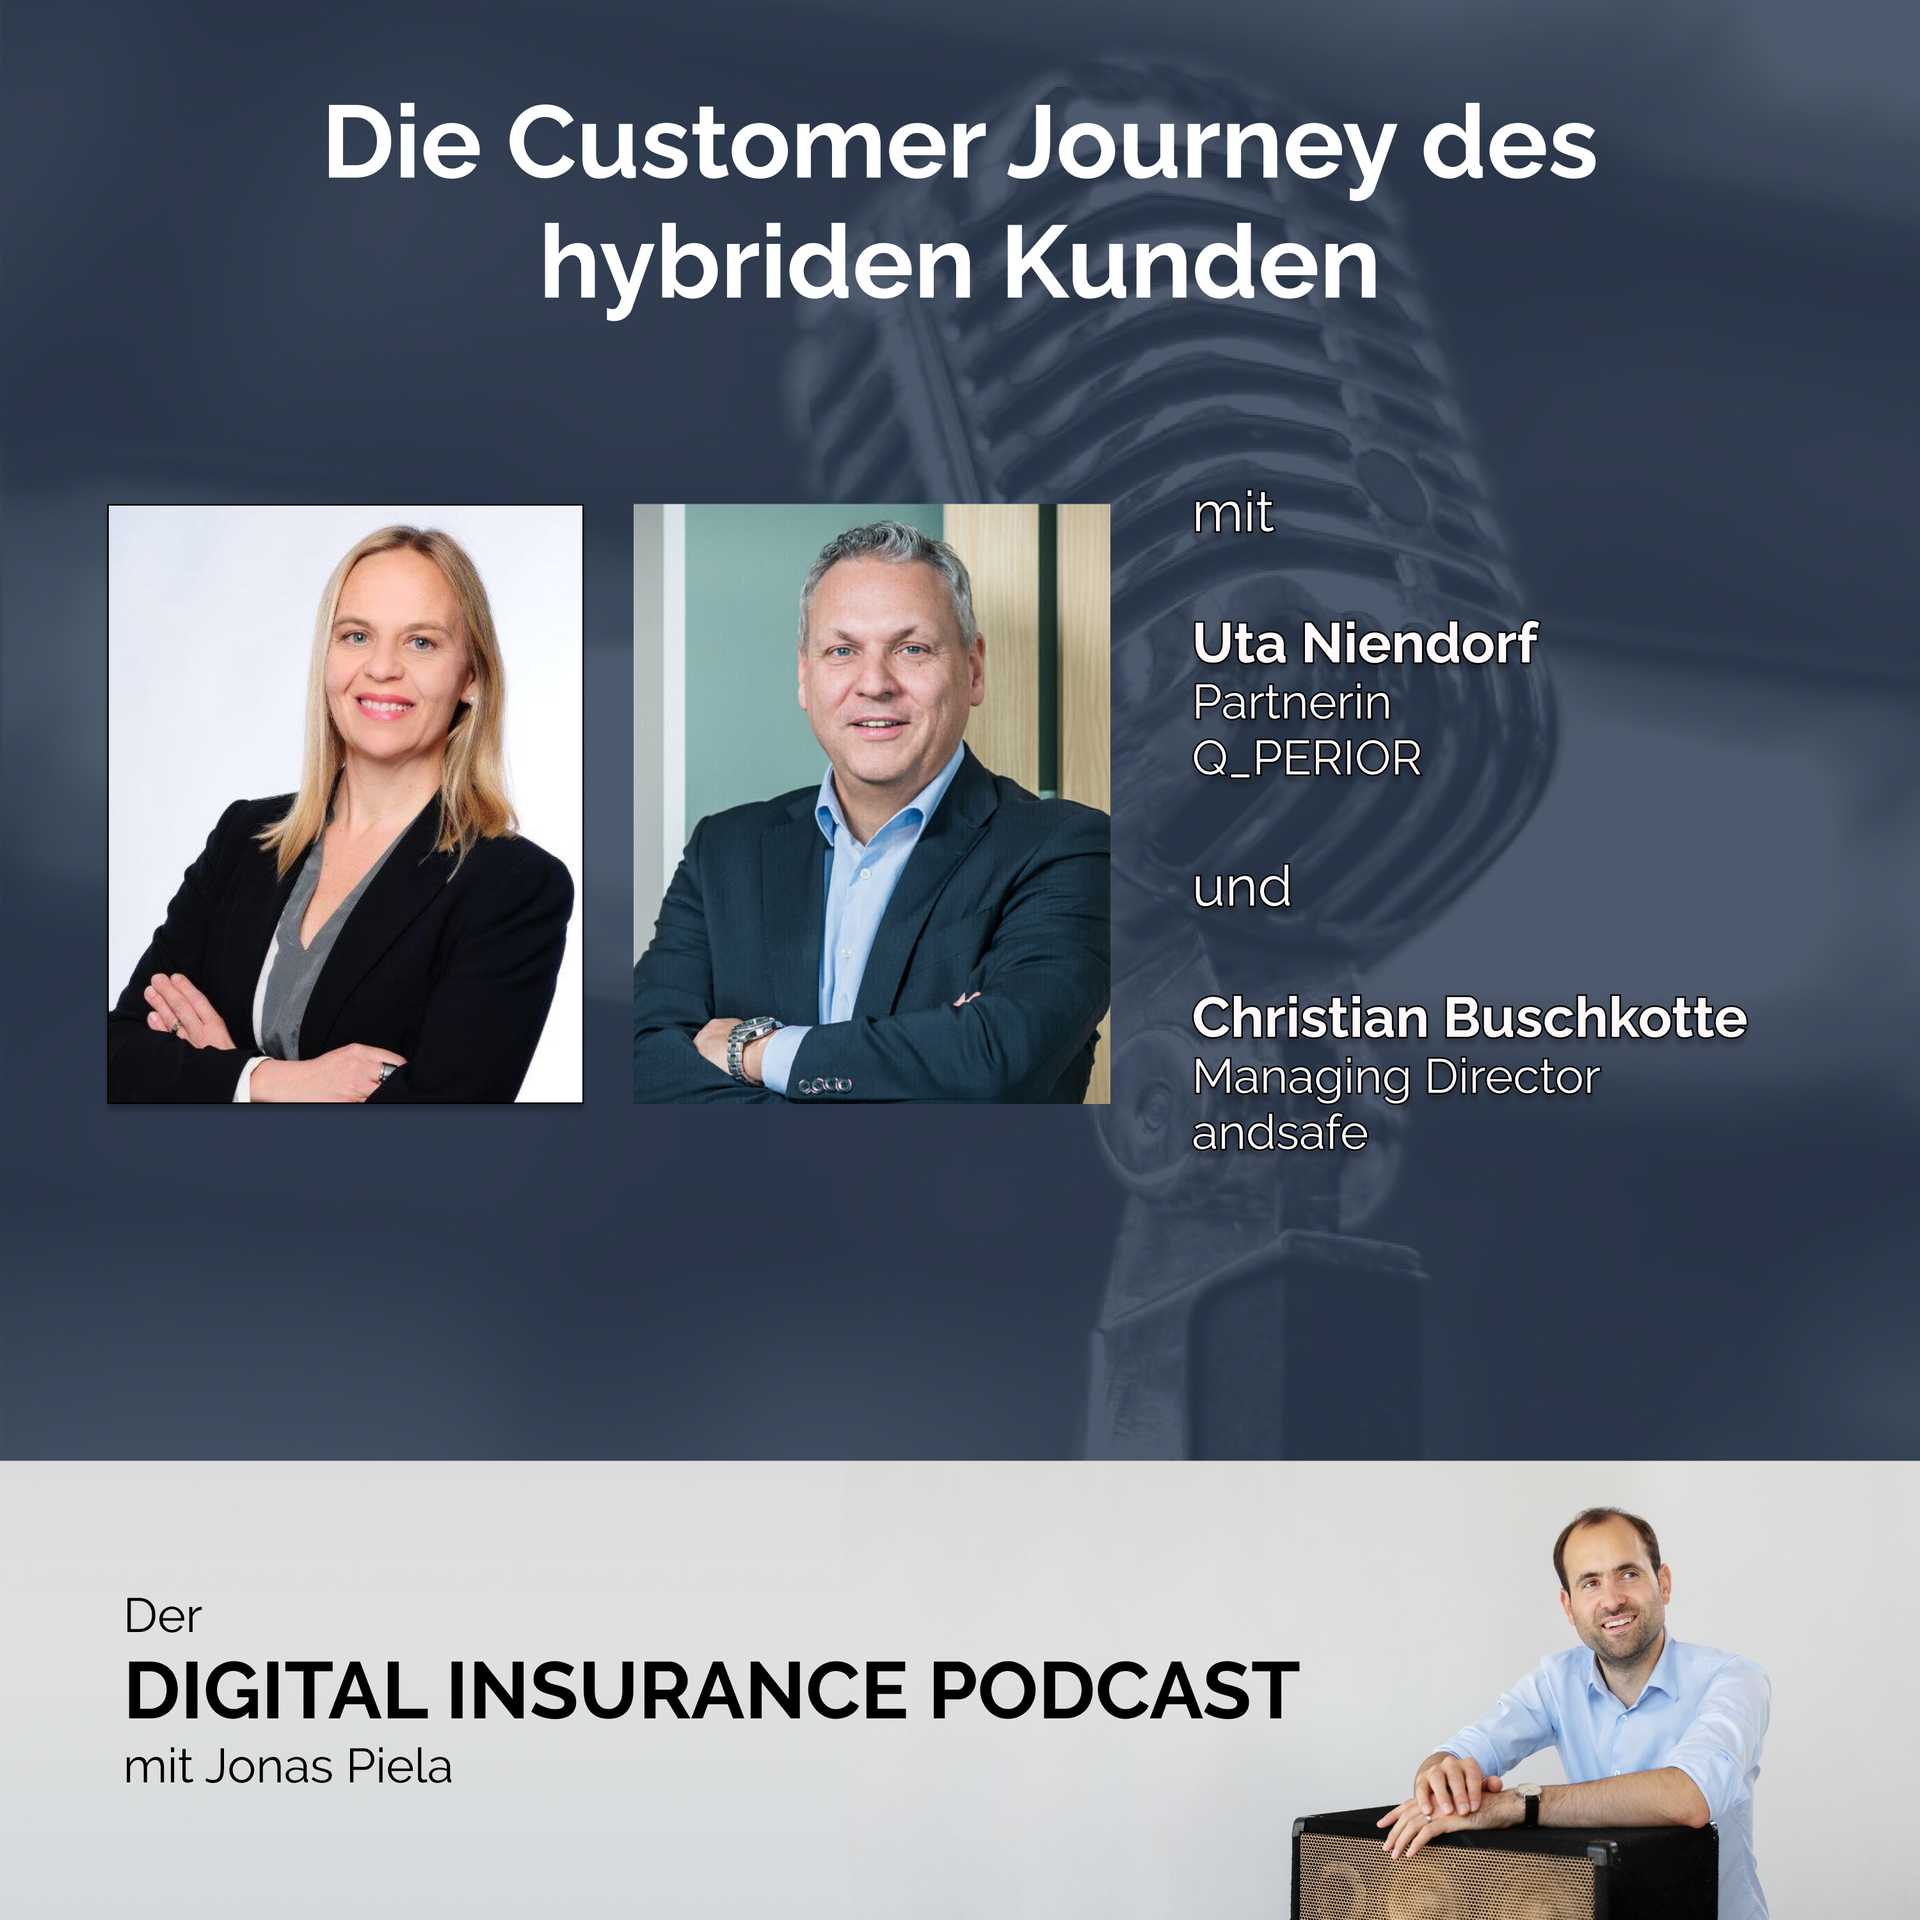 Die Customer Journey des hybriden Kunden mit Uta Niendorf und Christian Buschkotte